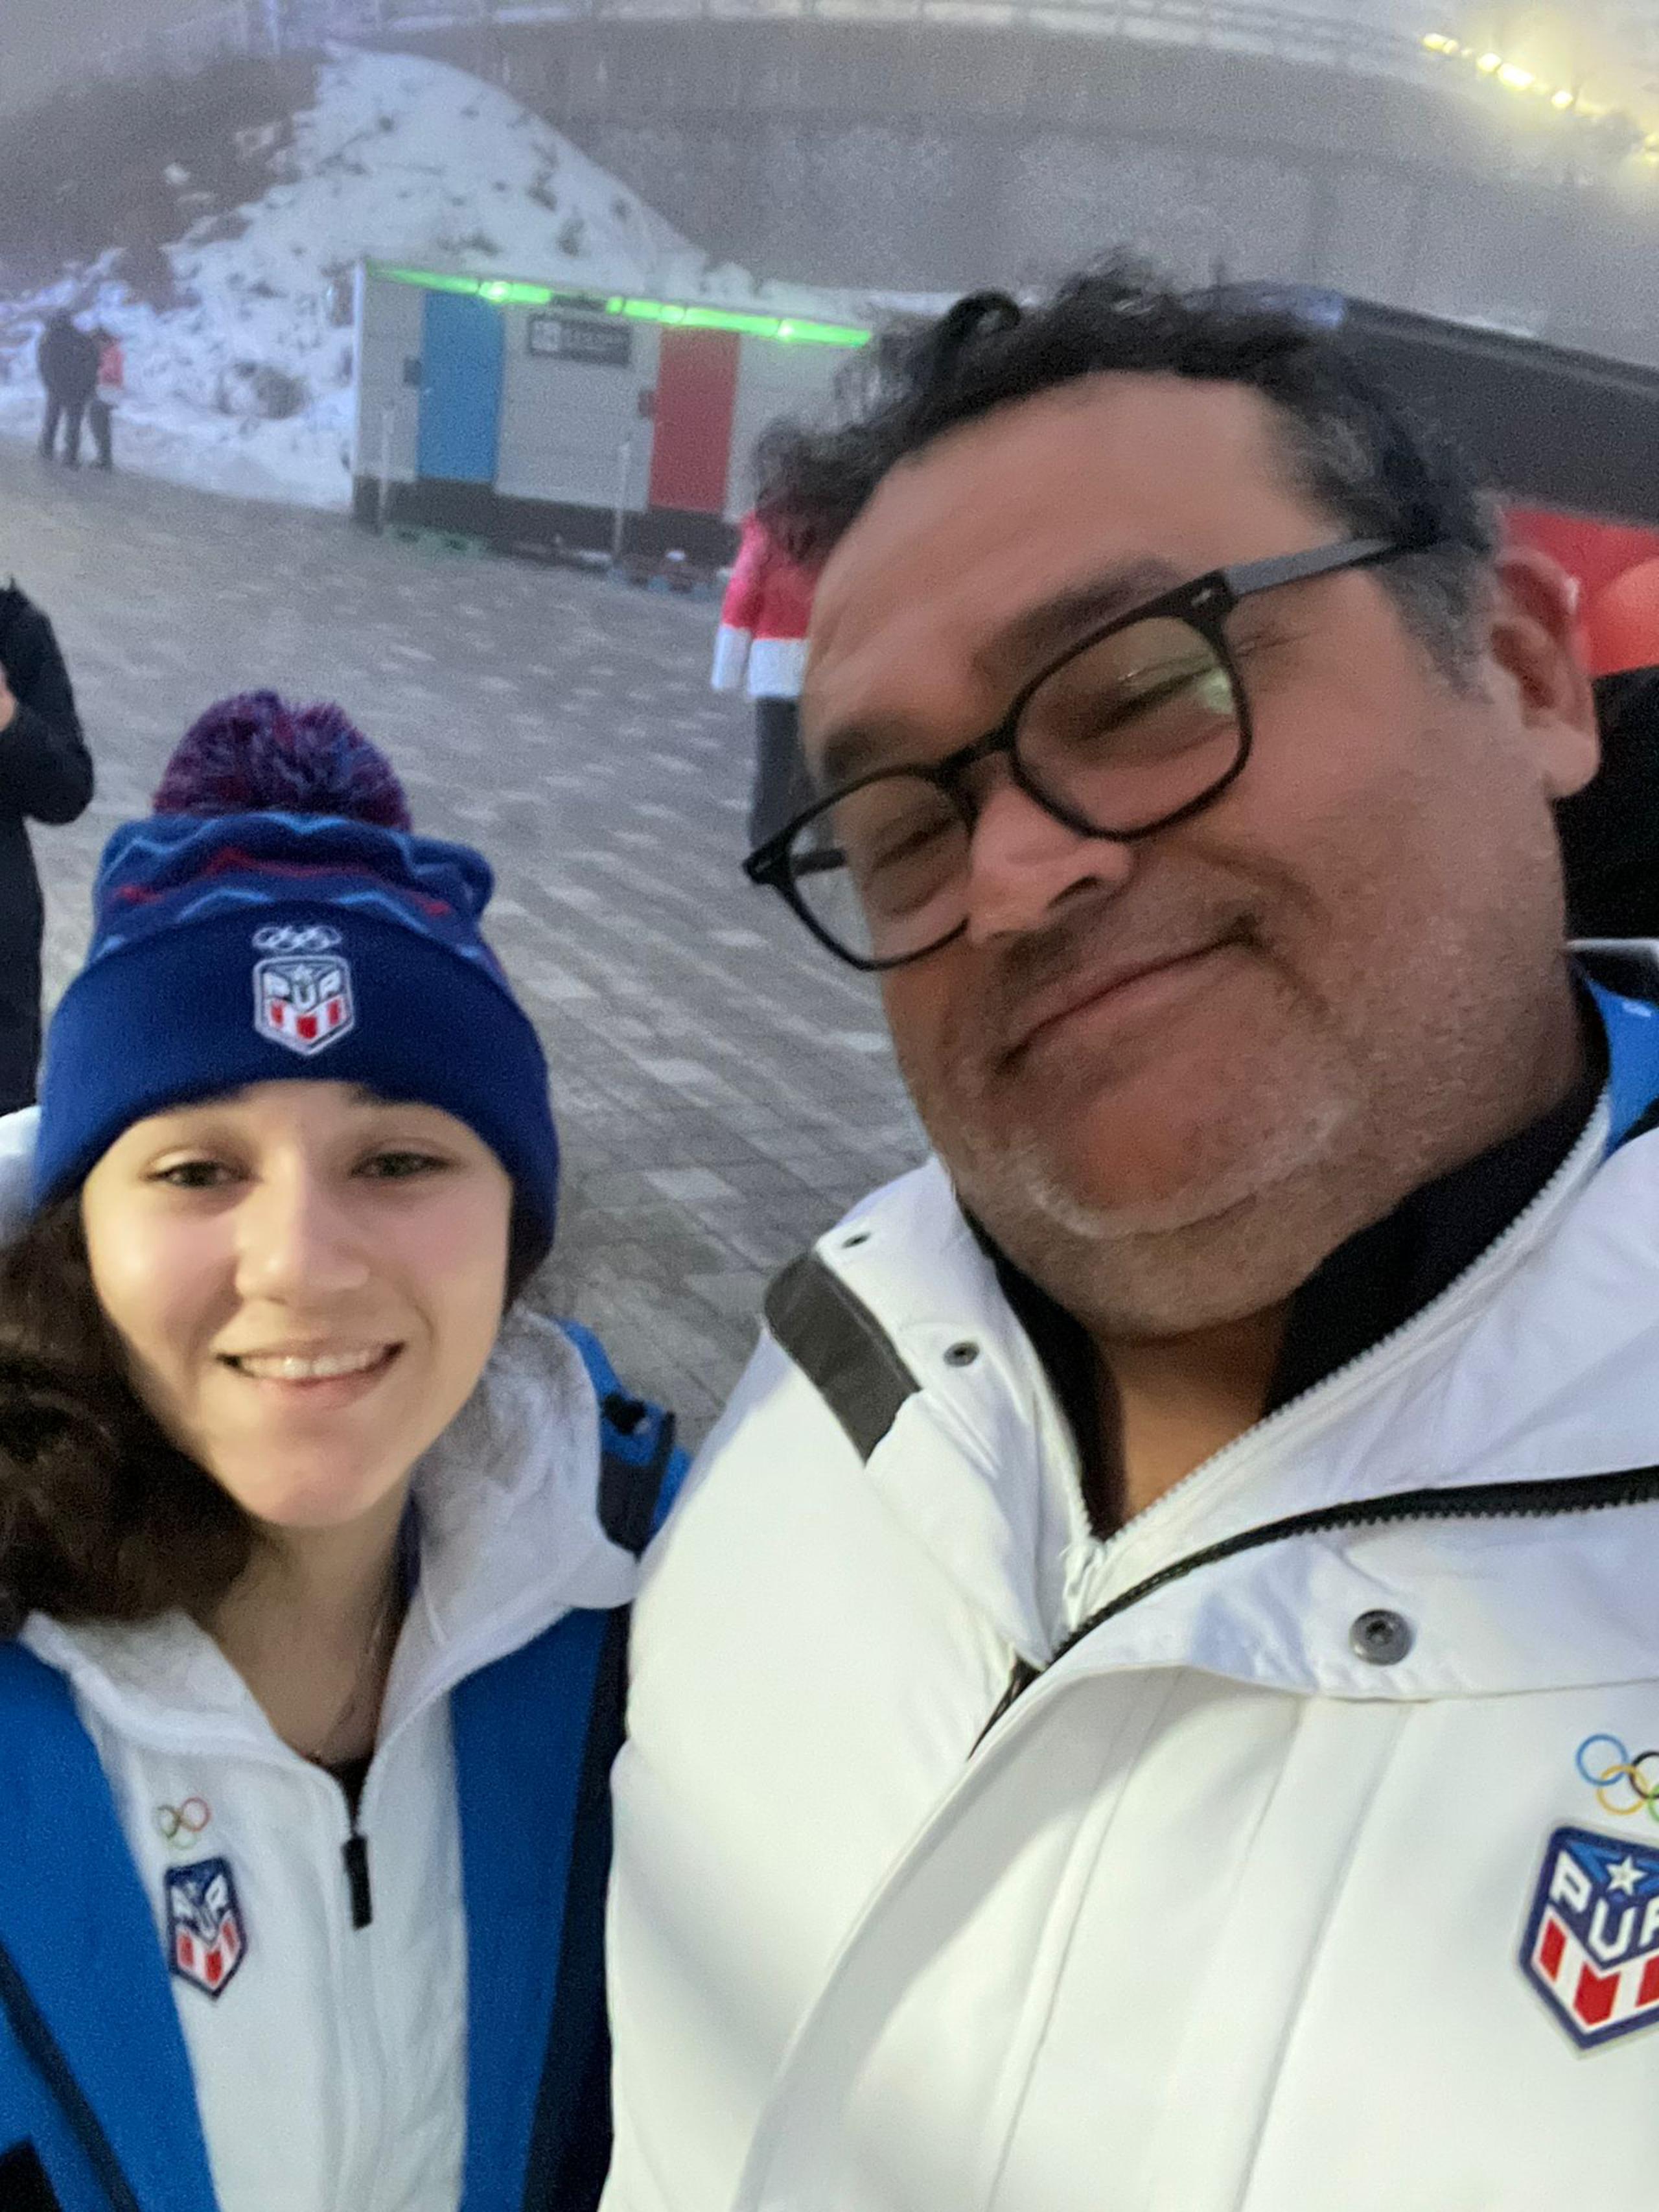 La atleta boricua de trineo, Isabela Aponte, con su indumentaria PUR junto al presidente federativo, Antonio Colón, previo a debutar en los Juegos Olímpicos Juveniles de Invierno en Gangwon, Corea del Sur.